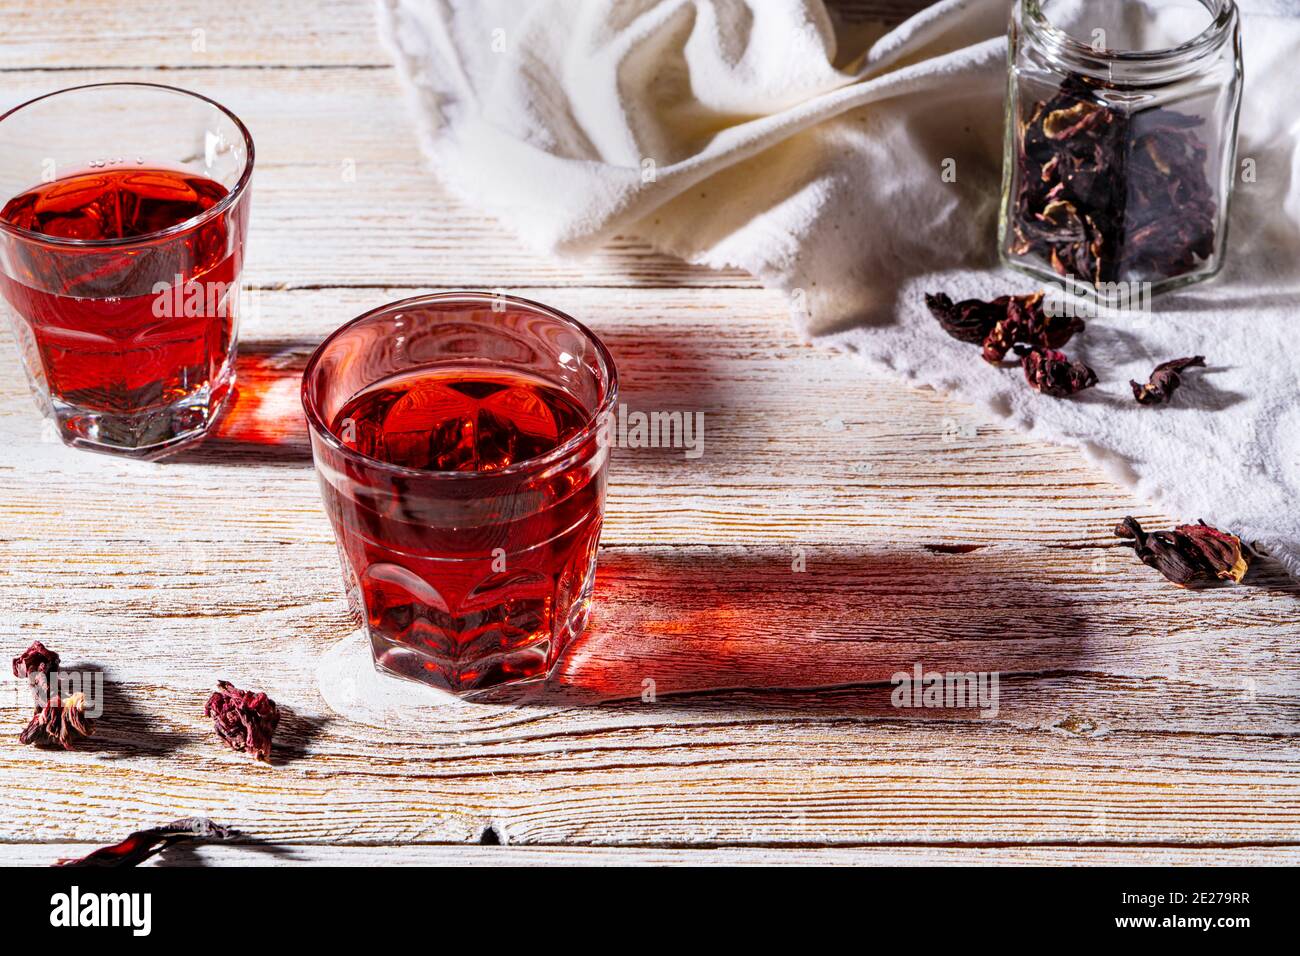 Rinfrescante tè hibiscus in bicchieri su tavolo di legno, petali di rosa e tè secco su tavolo di legno bianco rustico. Luce dura con ombre dure Foto Stock